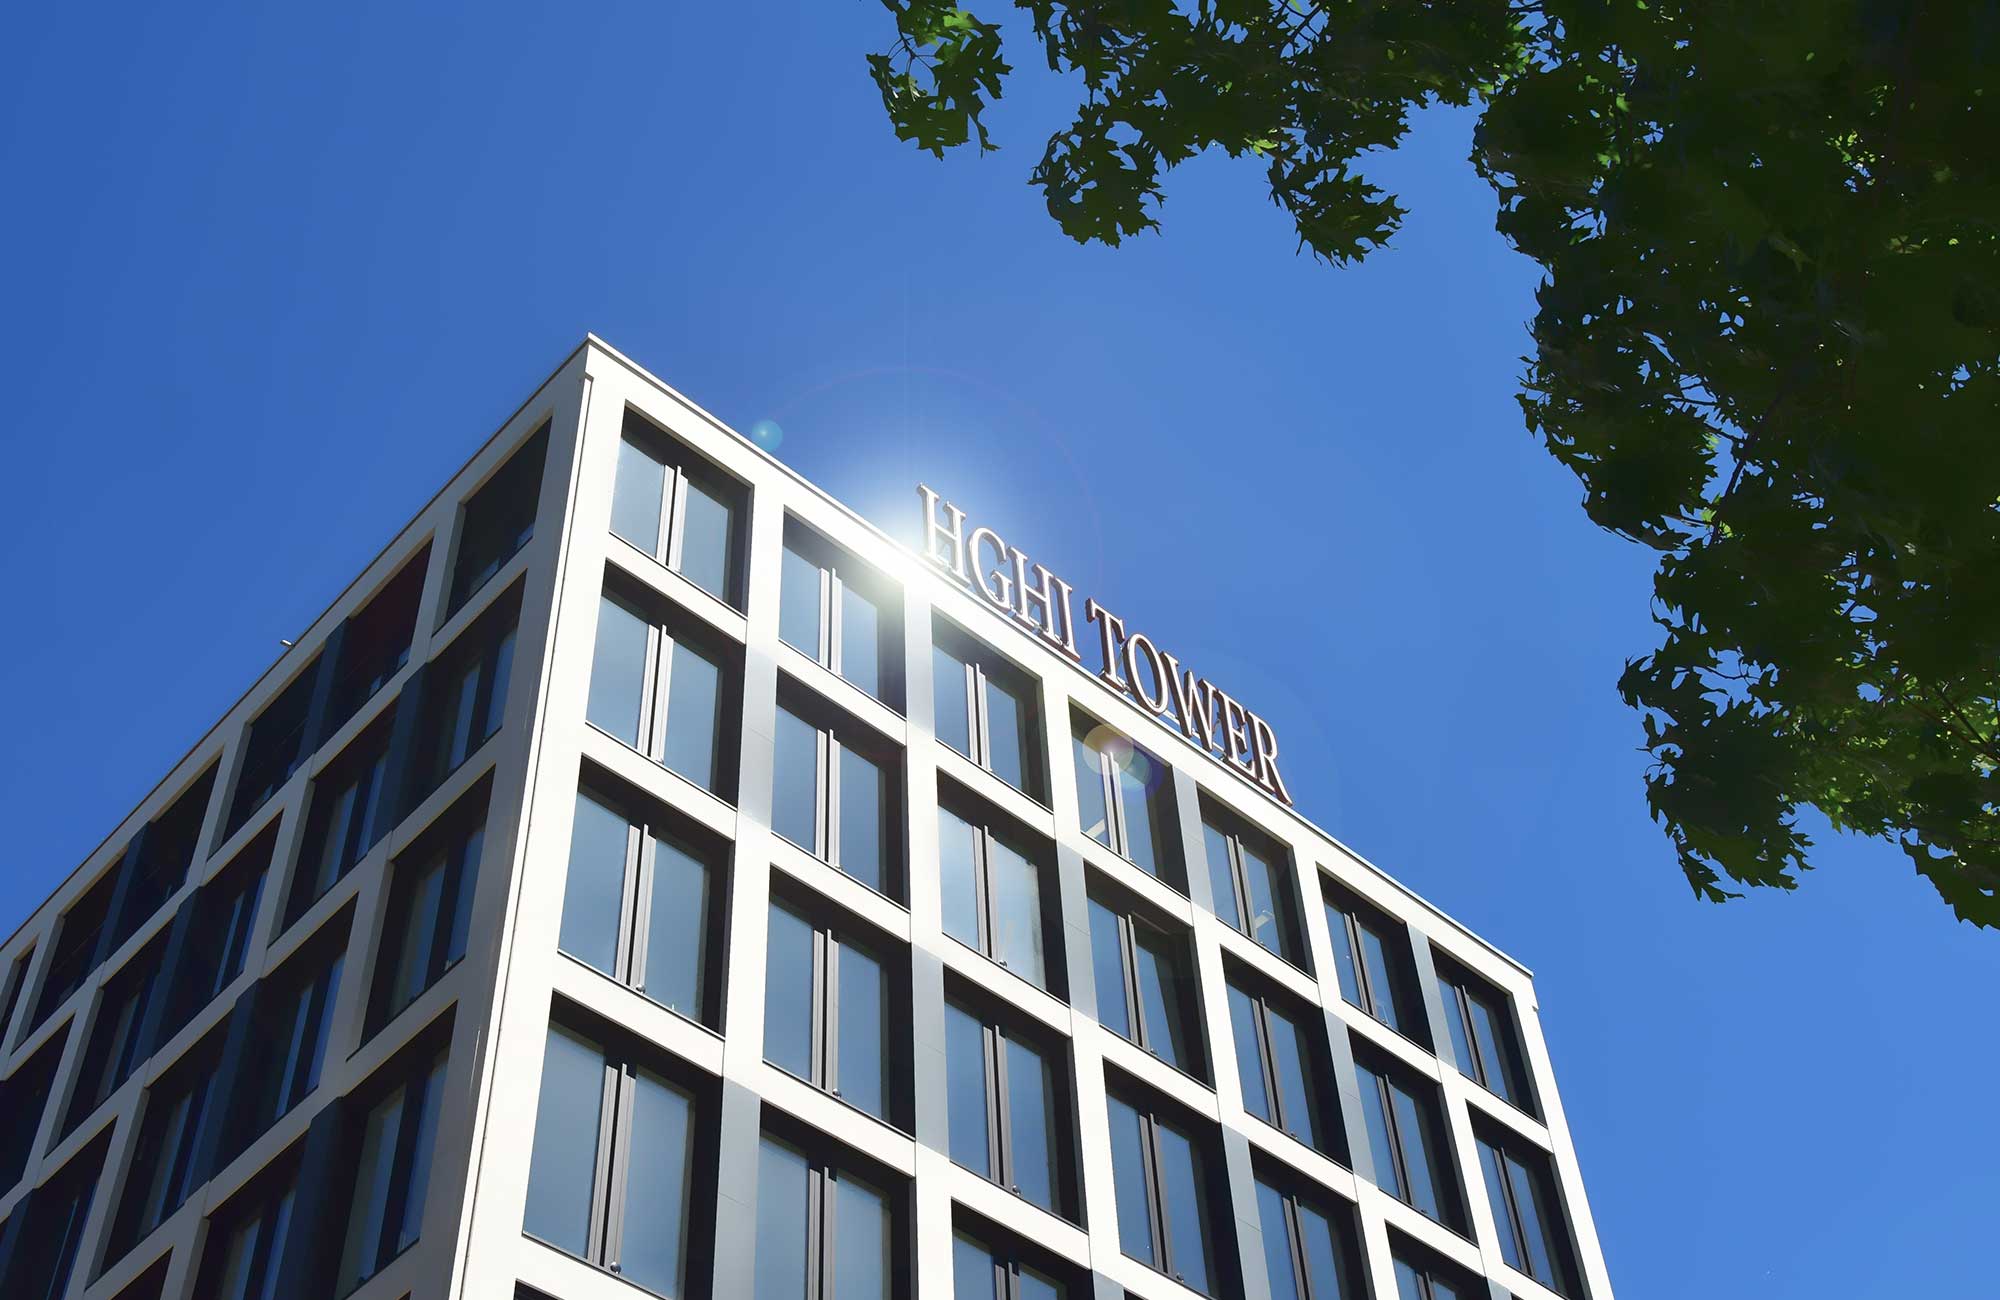 HGHI Tower ein abgeschlossenes Projekt der HGHI Holding GmbH